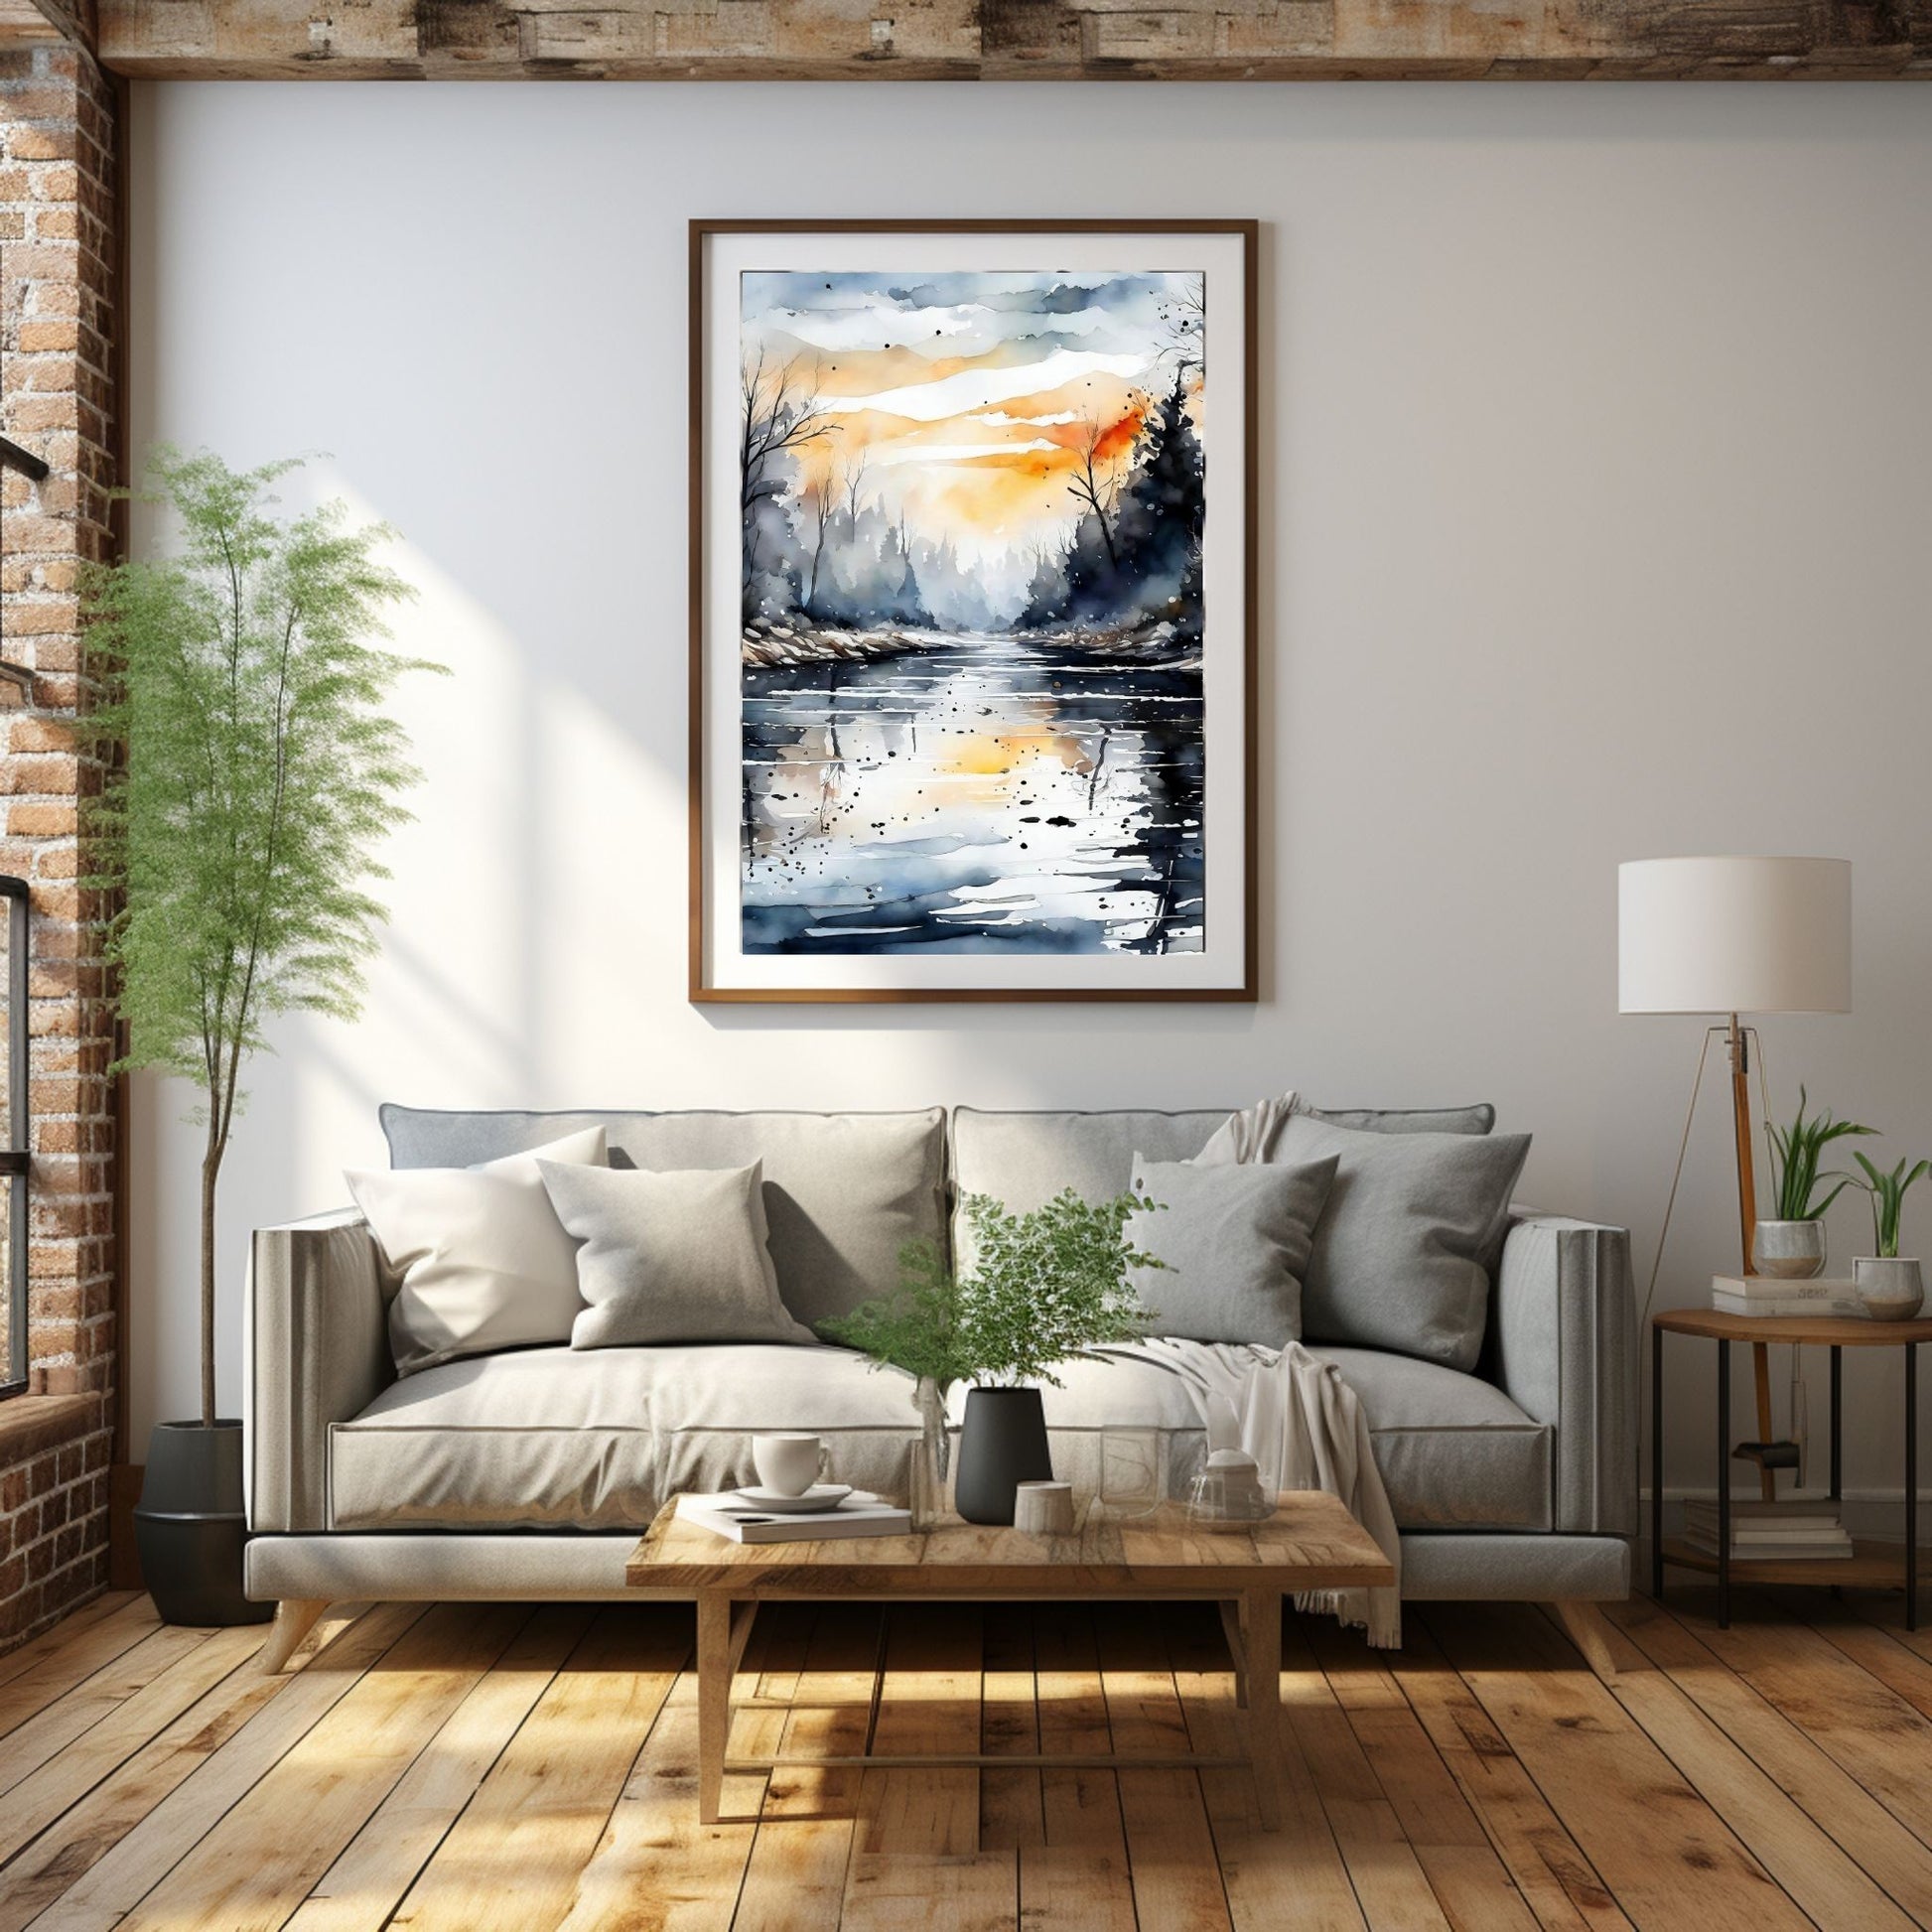 Digitalt kunstmaleri i akvarell som fanger essensen av vinterscenene med et sjarmerende landskap der snøfnugg danser i luften, og en himmel badet i kvelsdssol. Illustrasjonsfoto som viser motivet som plakat i ramme som henger over en sofa.